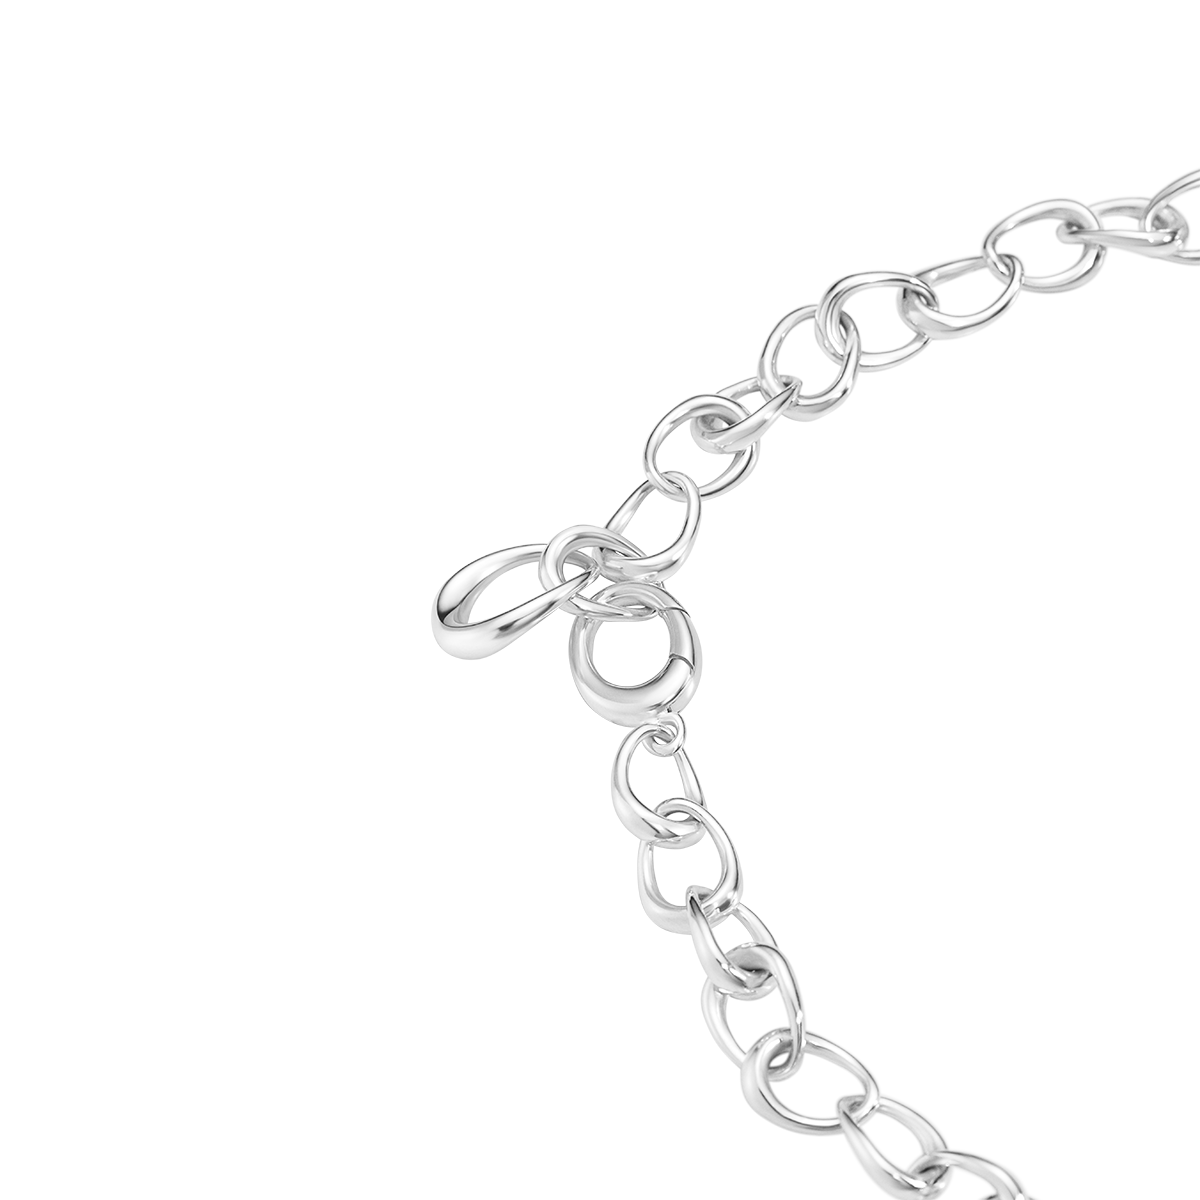 Offspring halskæde - sølv fra Georg Jensen